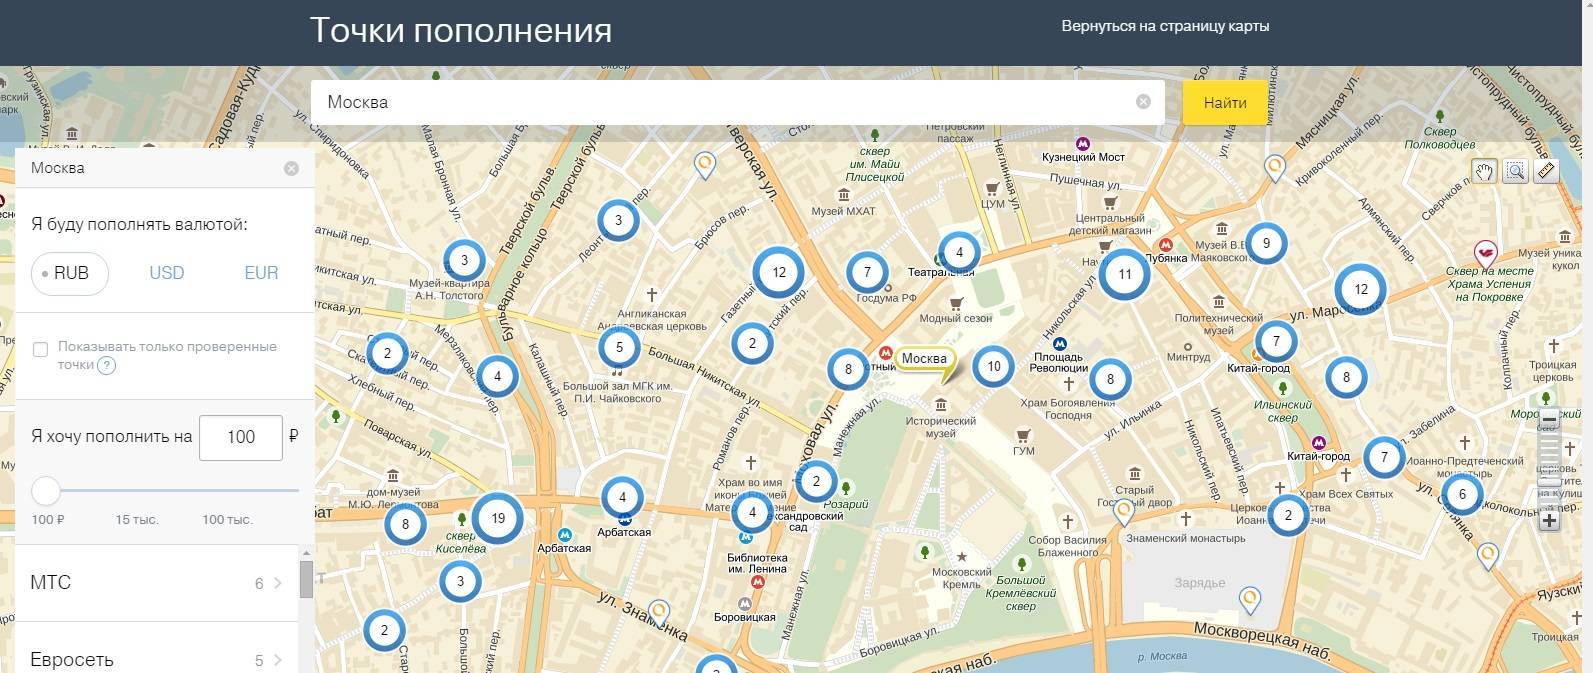 Интернет-кафе в москве и санкт-петербурге: адреса на карте, как найти